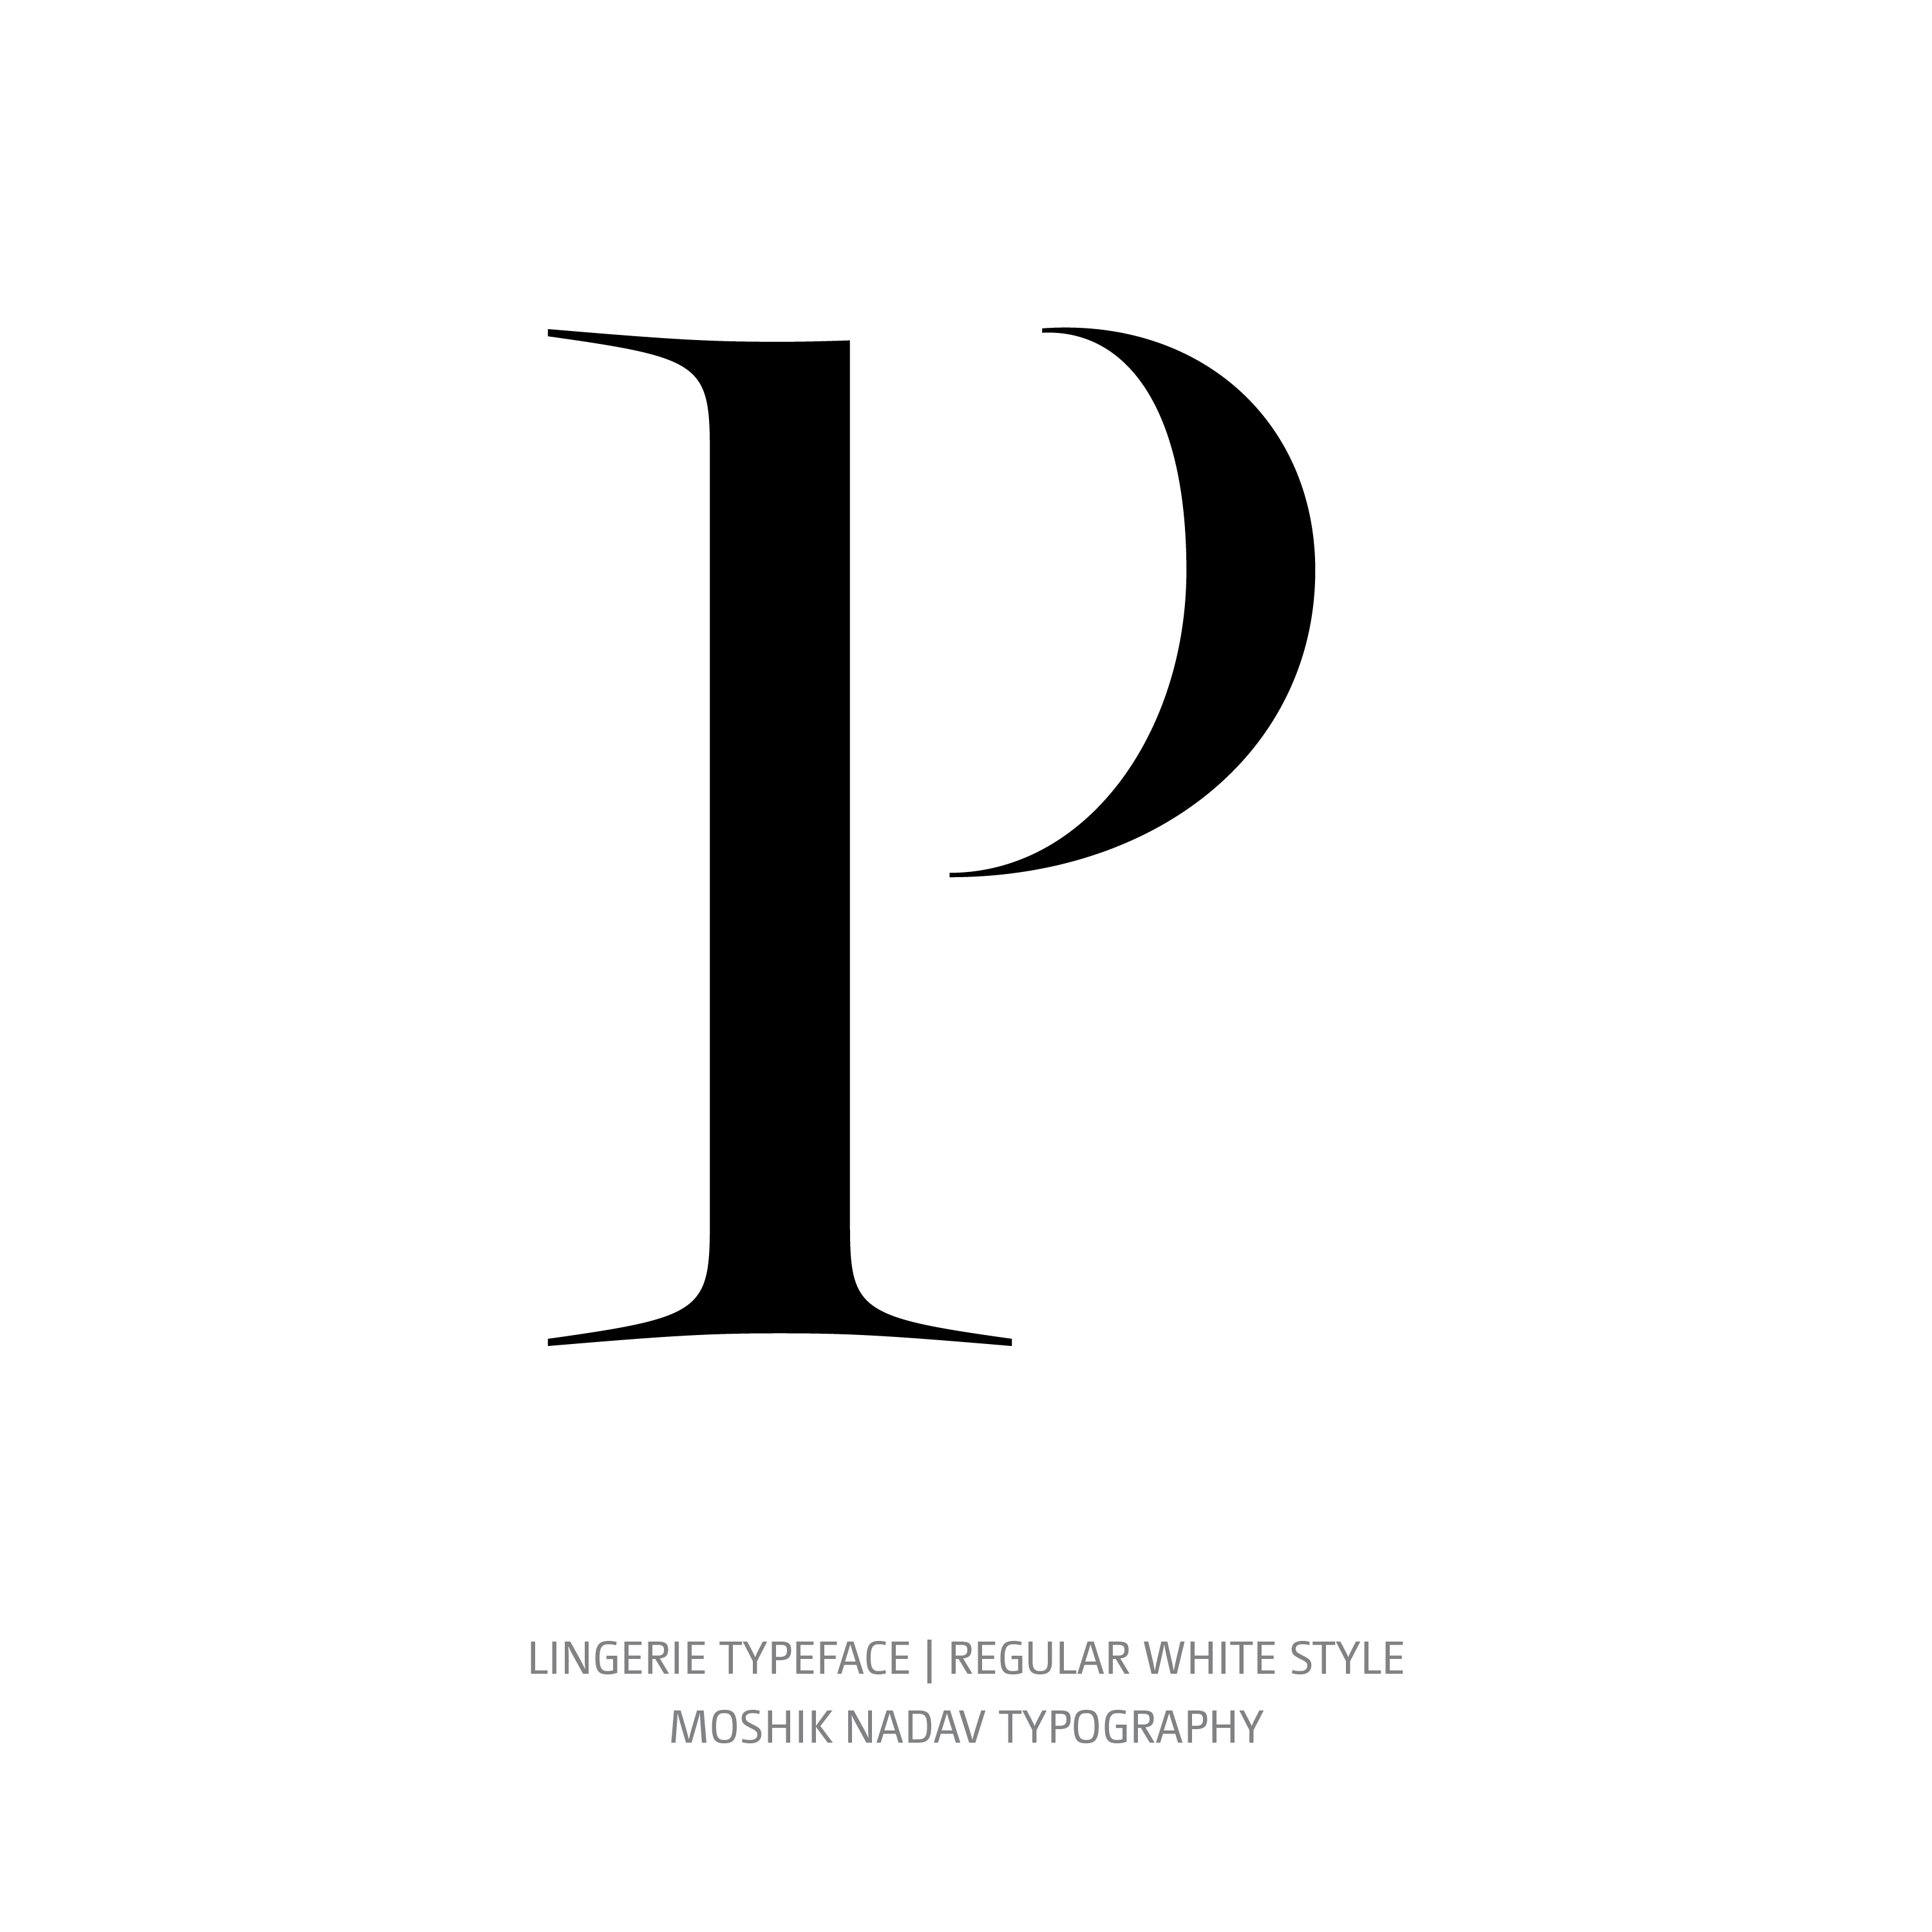 Lingerie Typeface Regular White P